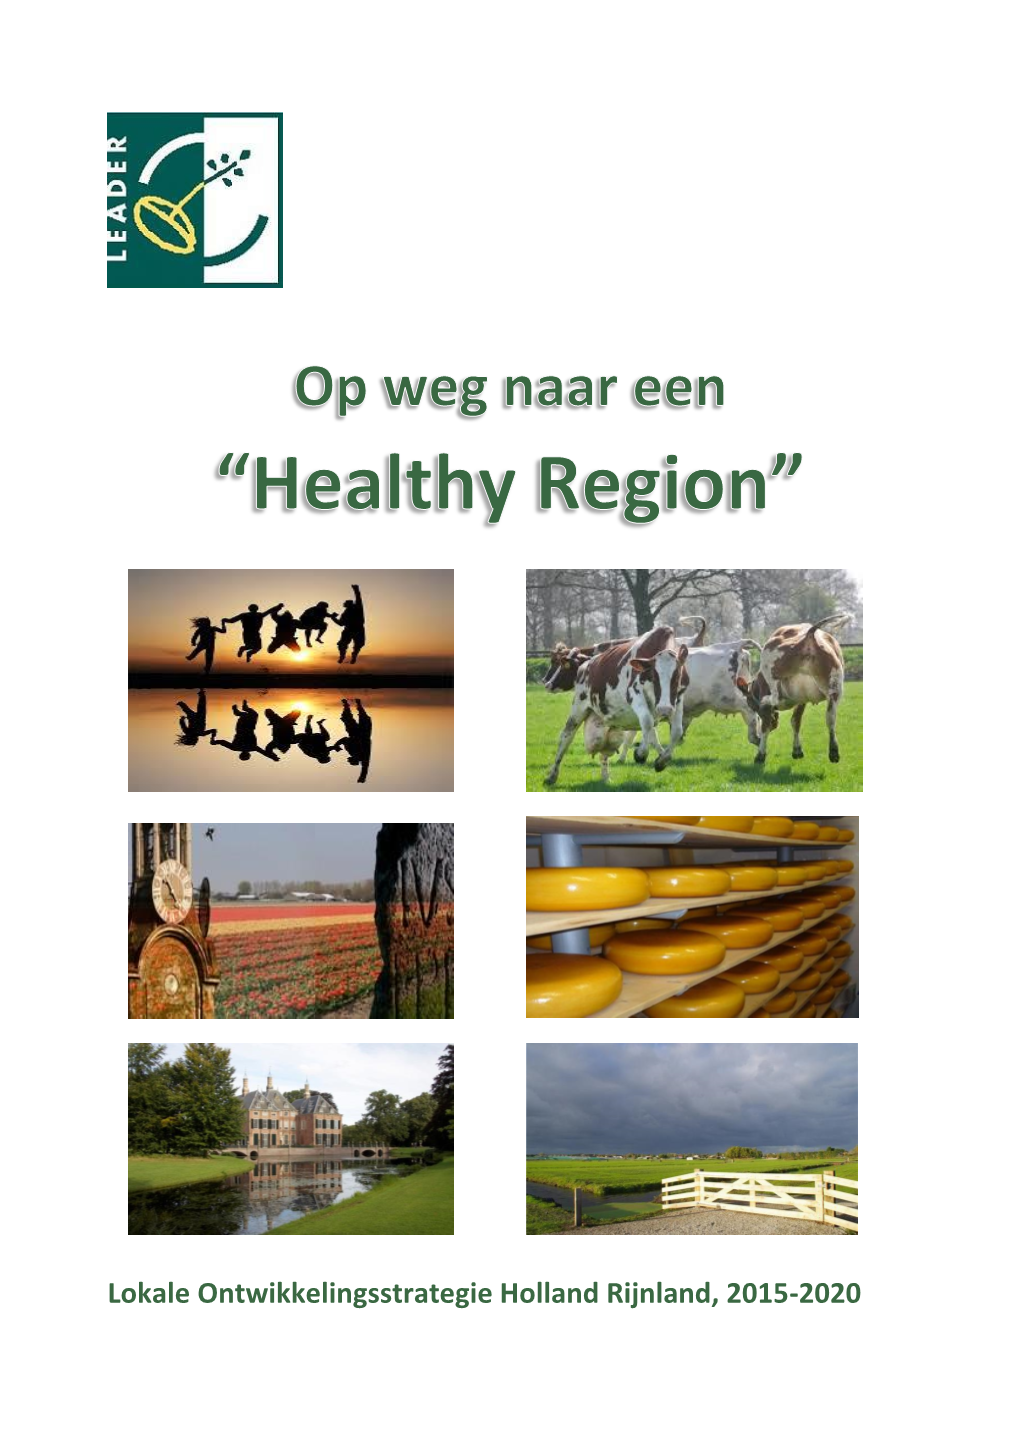 Lokale Ontwikkelingsstrategie Holland Rijnland, 2015-2020